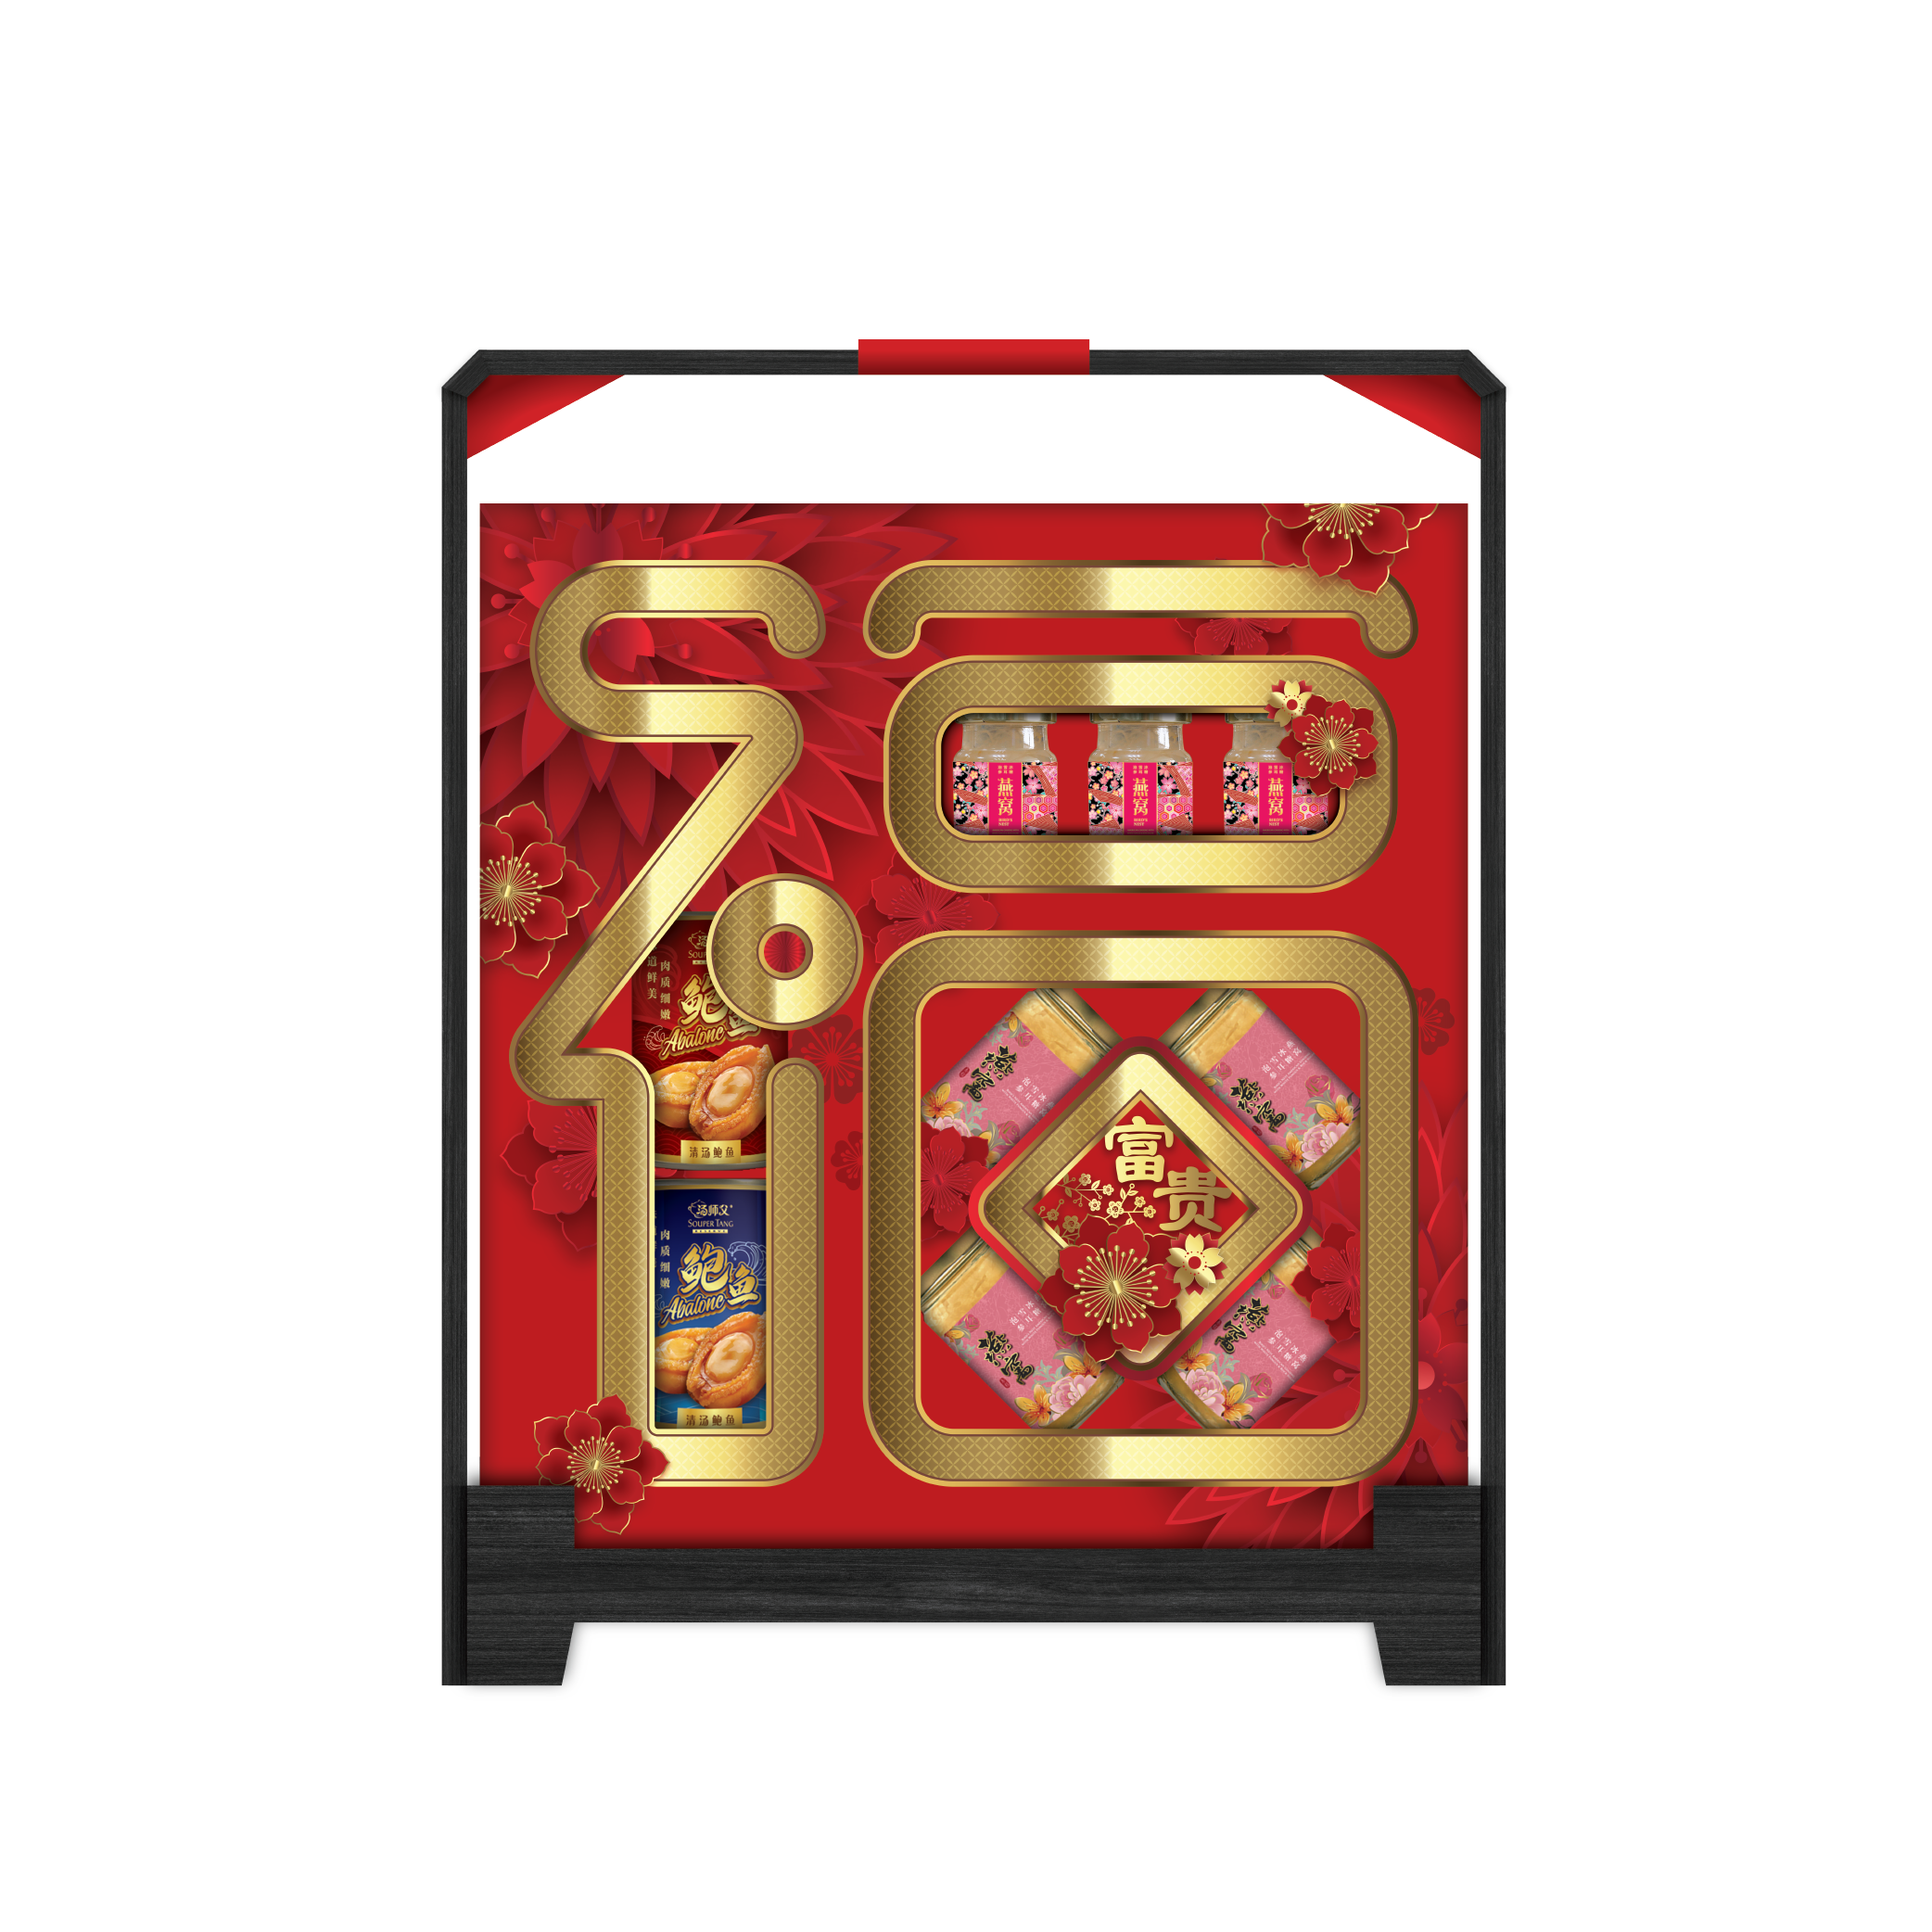 新年礼盒 / CNY Hamper Gift Box